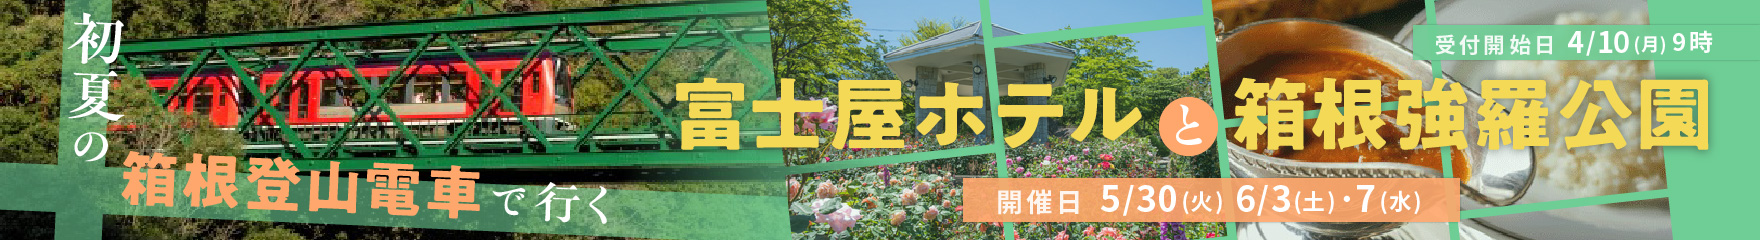 初夏の箱根登山電車で行く富士屋ホテルと箱根強羅公園